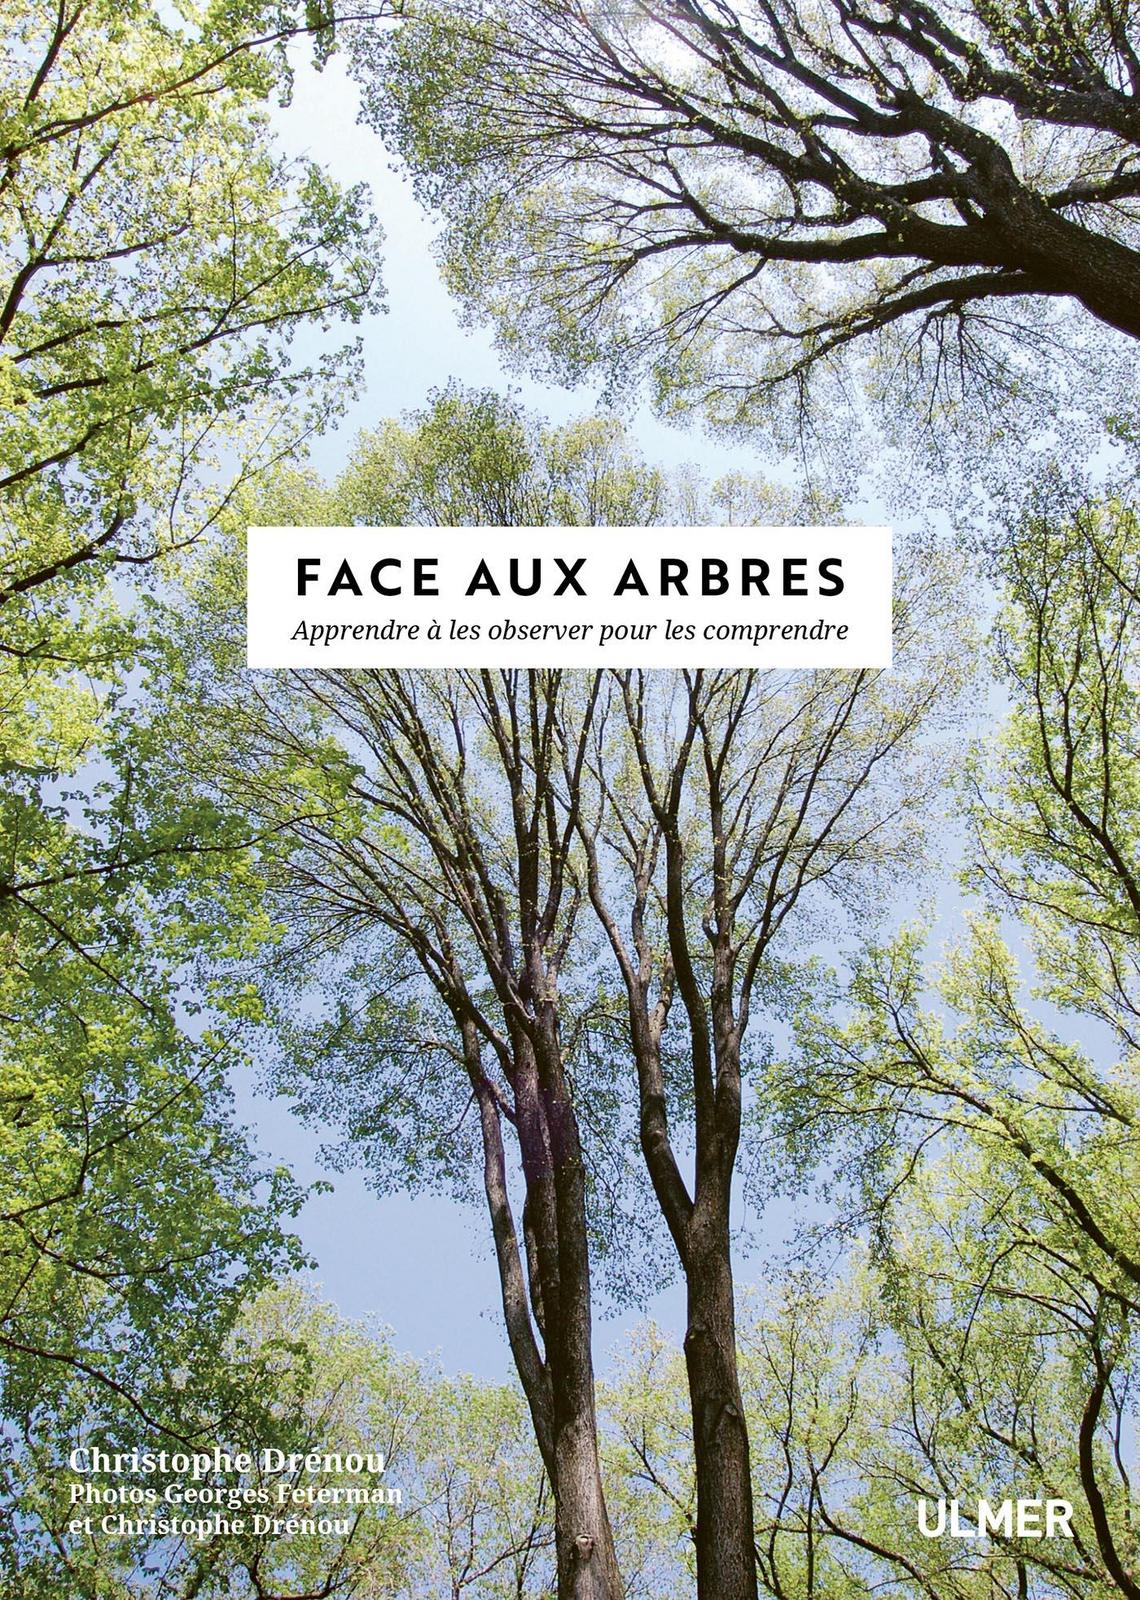 Christophe Drénou, Georges Feterman: Face aux arbres (Paperback, Français language, 2019, Ulmer)